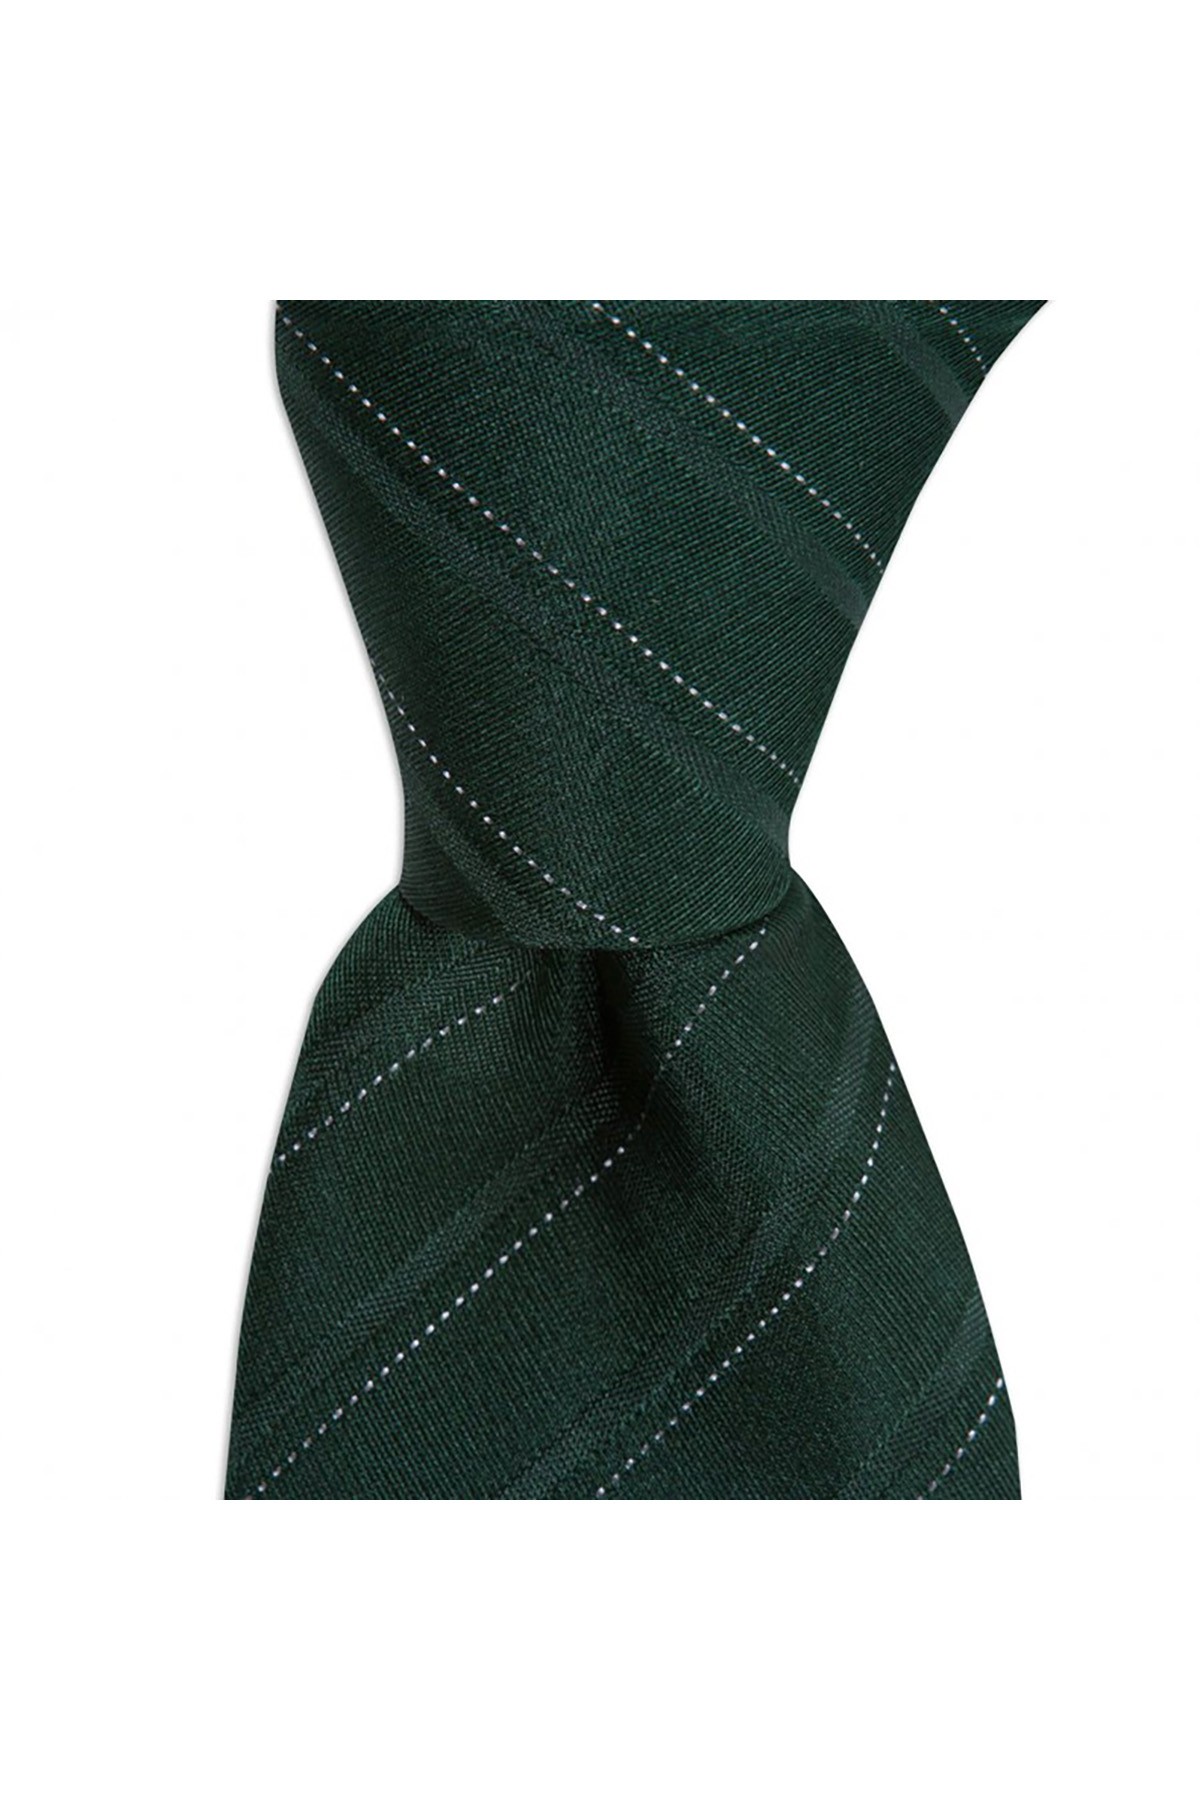 Klasik çizgili 8 cm genişliğinde ipek kravat - Koyu yeşil